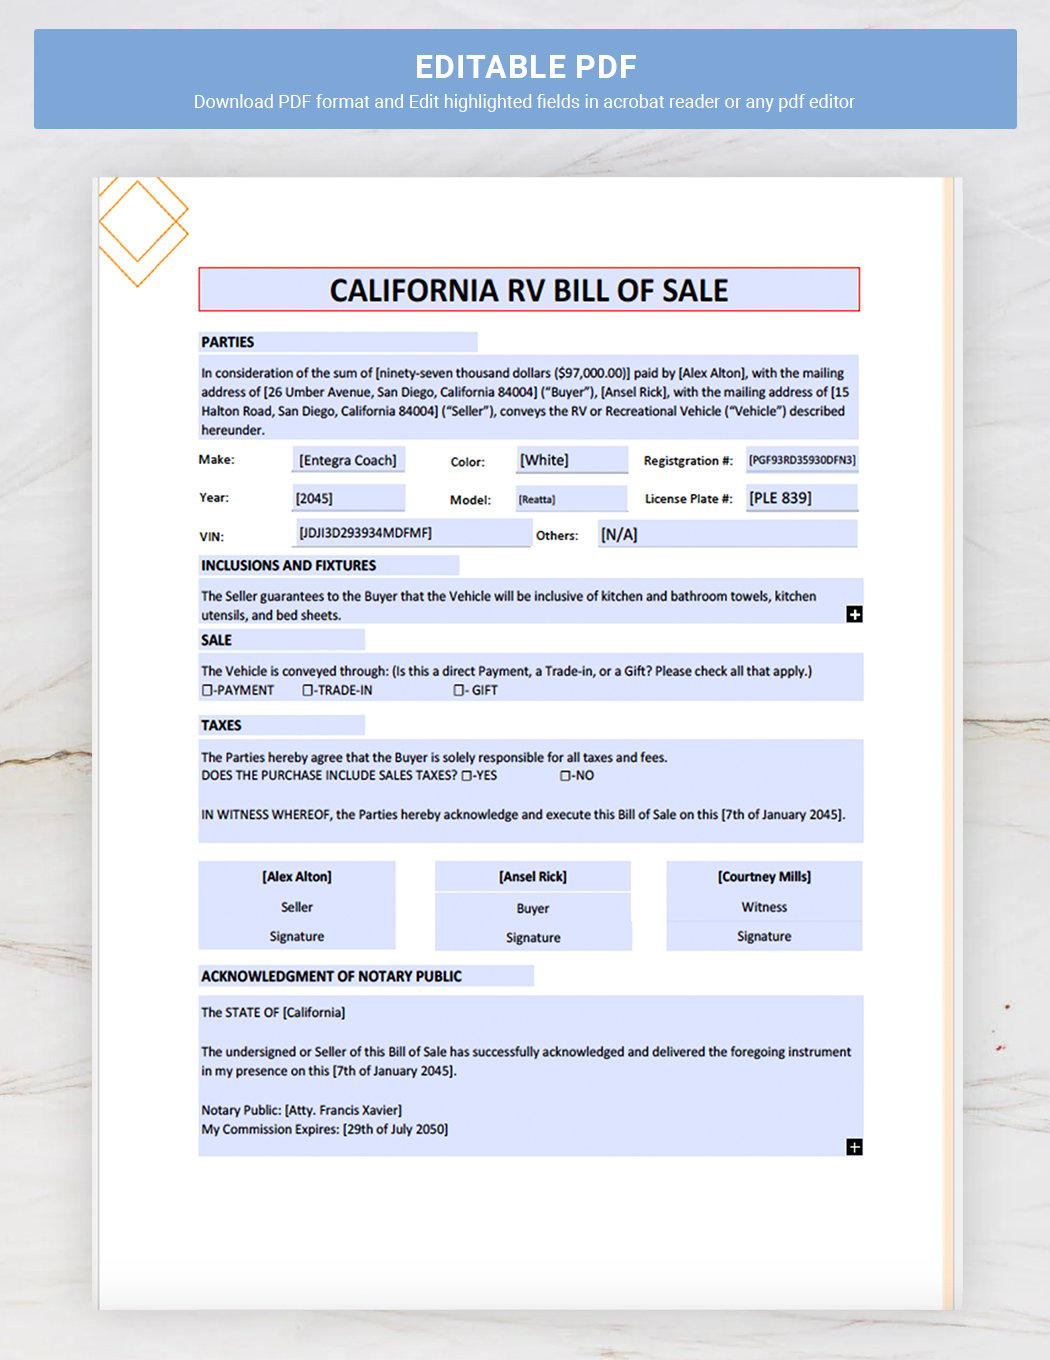 California RV Bill of Sale Template